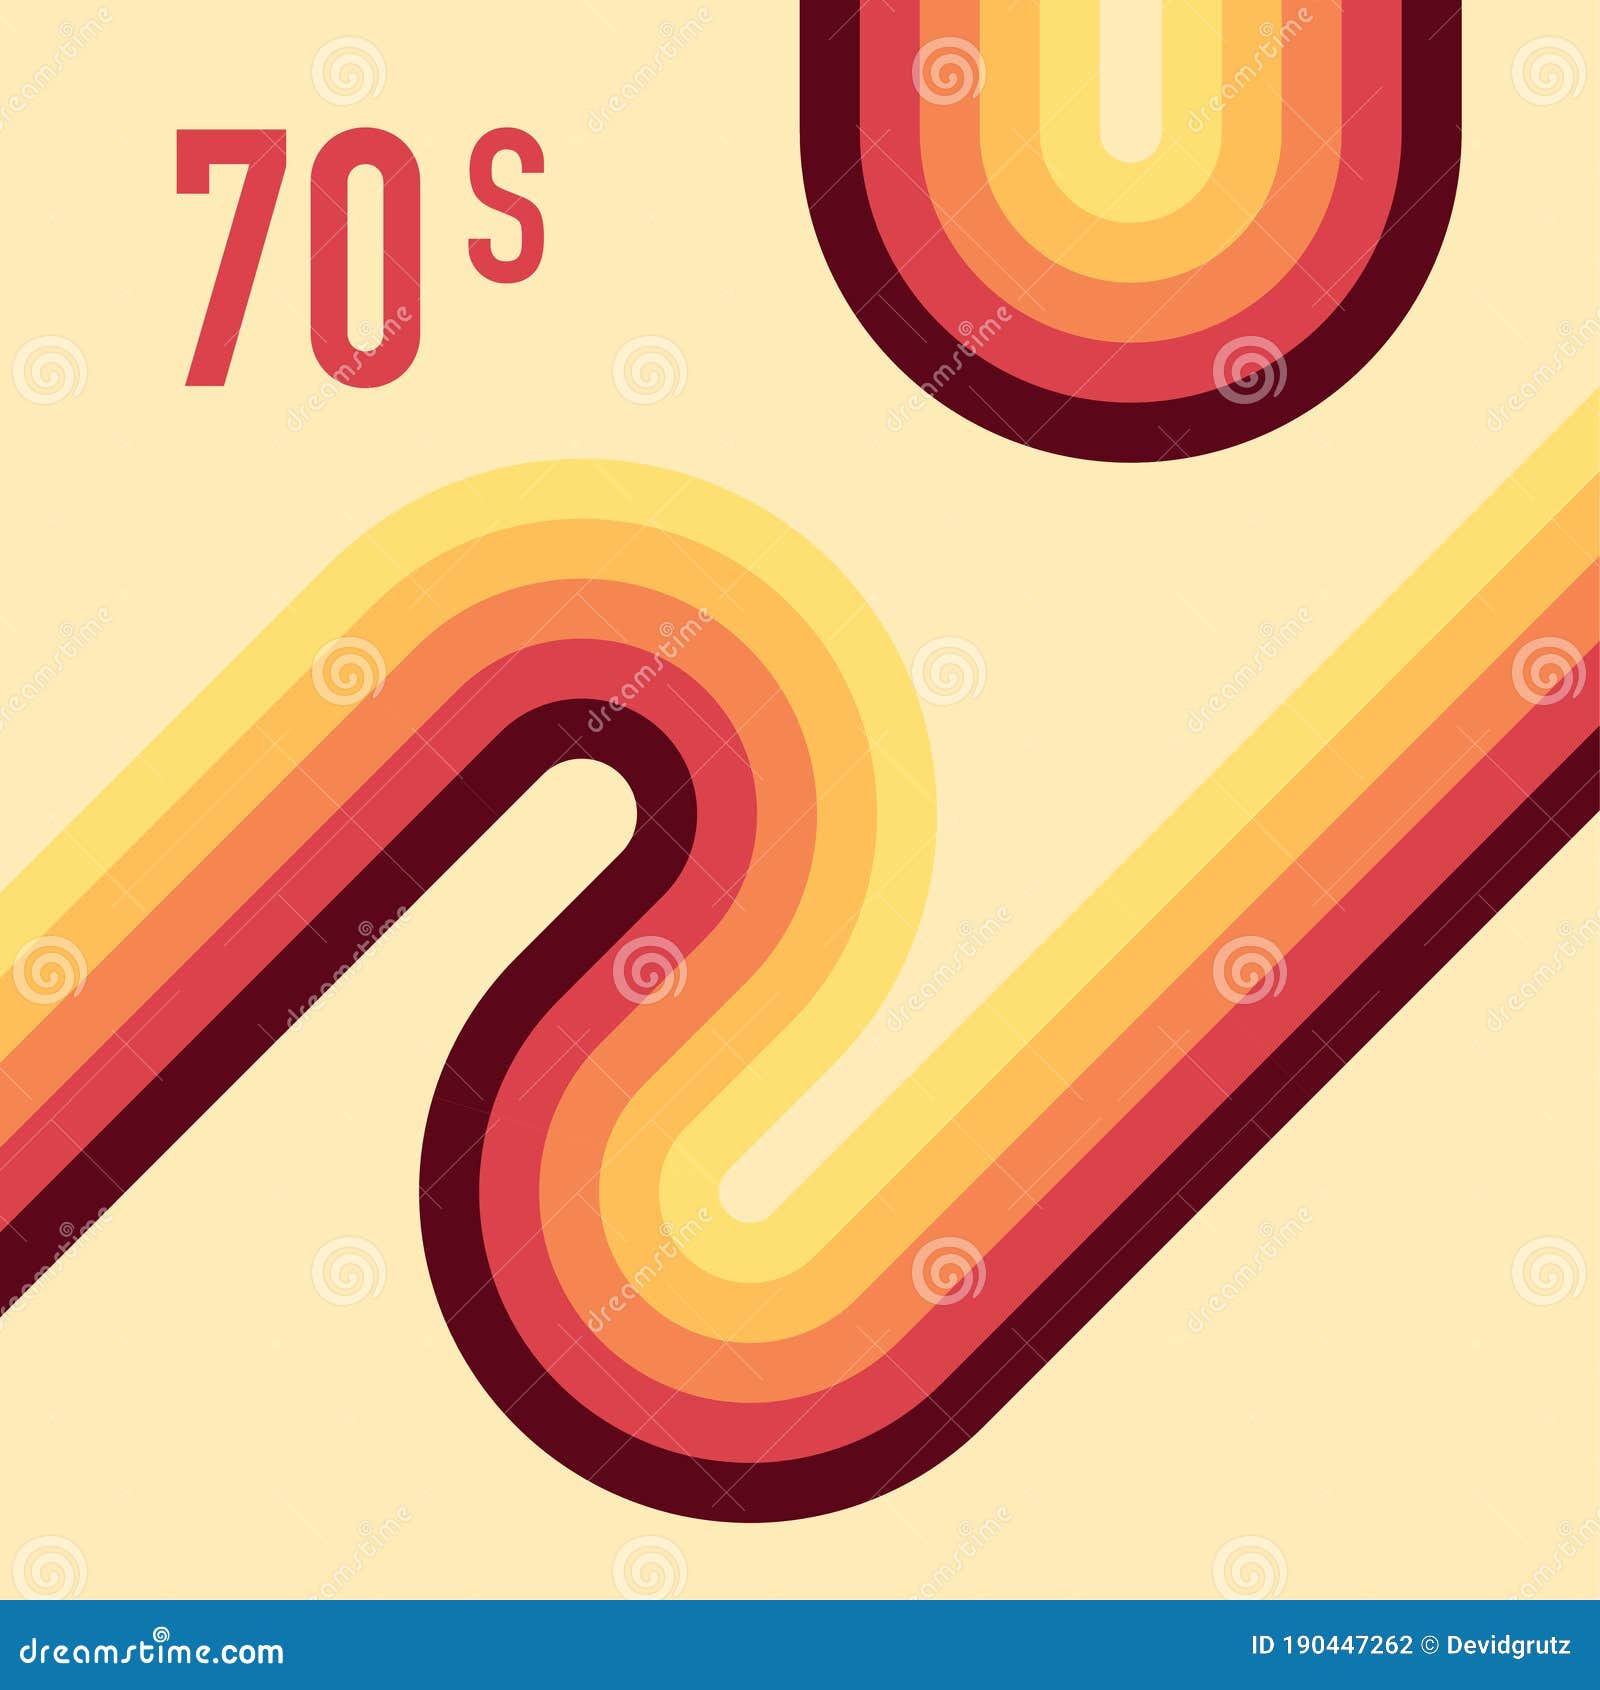 Hình minh hoạ đường thẳng thập niên 70 - 3.543 hình minh hoạ nguồn 70s Lines Stock sẽ giúp bạn tìm thấy những hình ảnh tuyệt đẹp về đường thẳng những năm